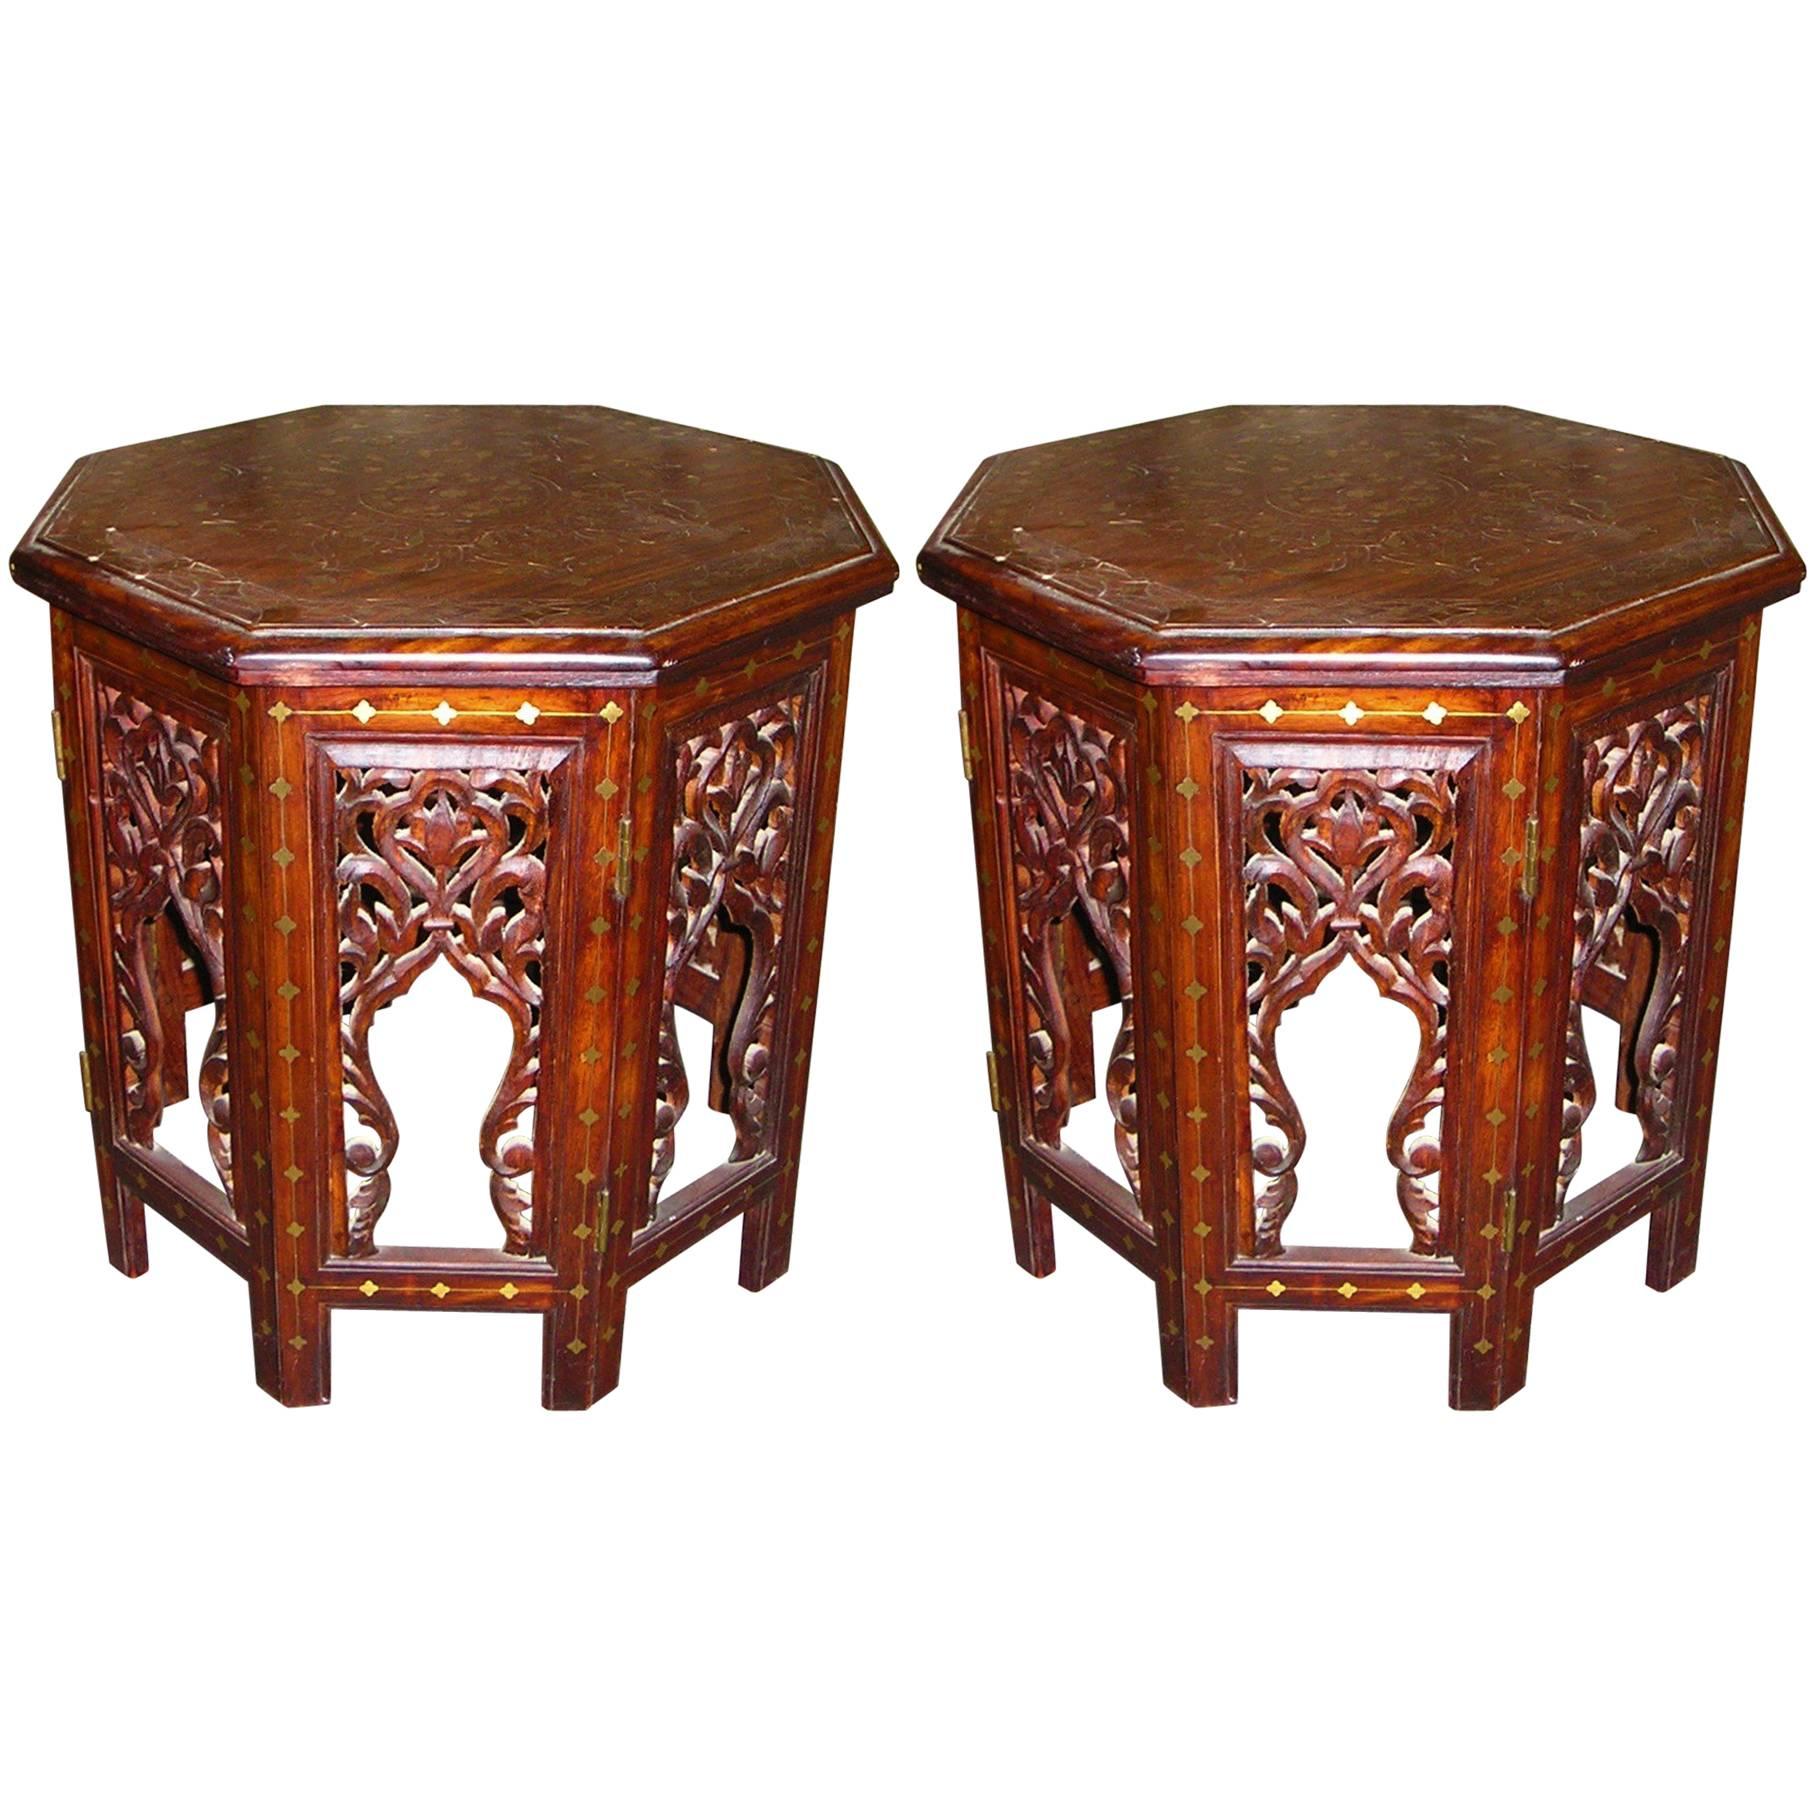 Paire de tables d'appoint ou d'extrémité anglo-indiennes incrustées et sculptées à la main avec laiton et cuivre